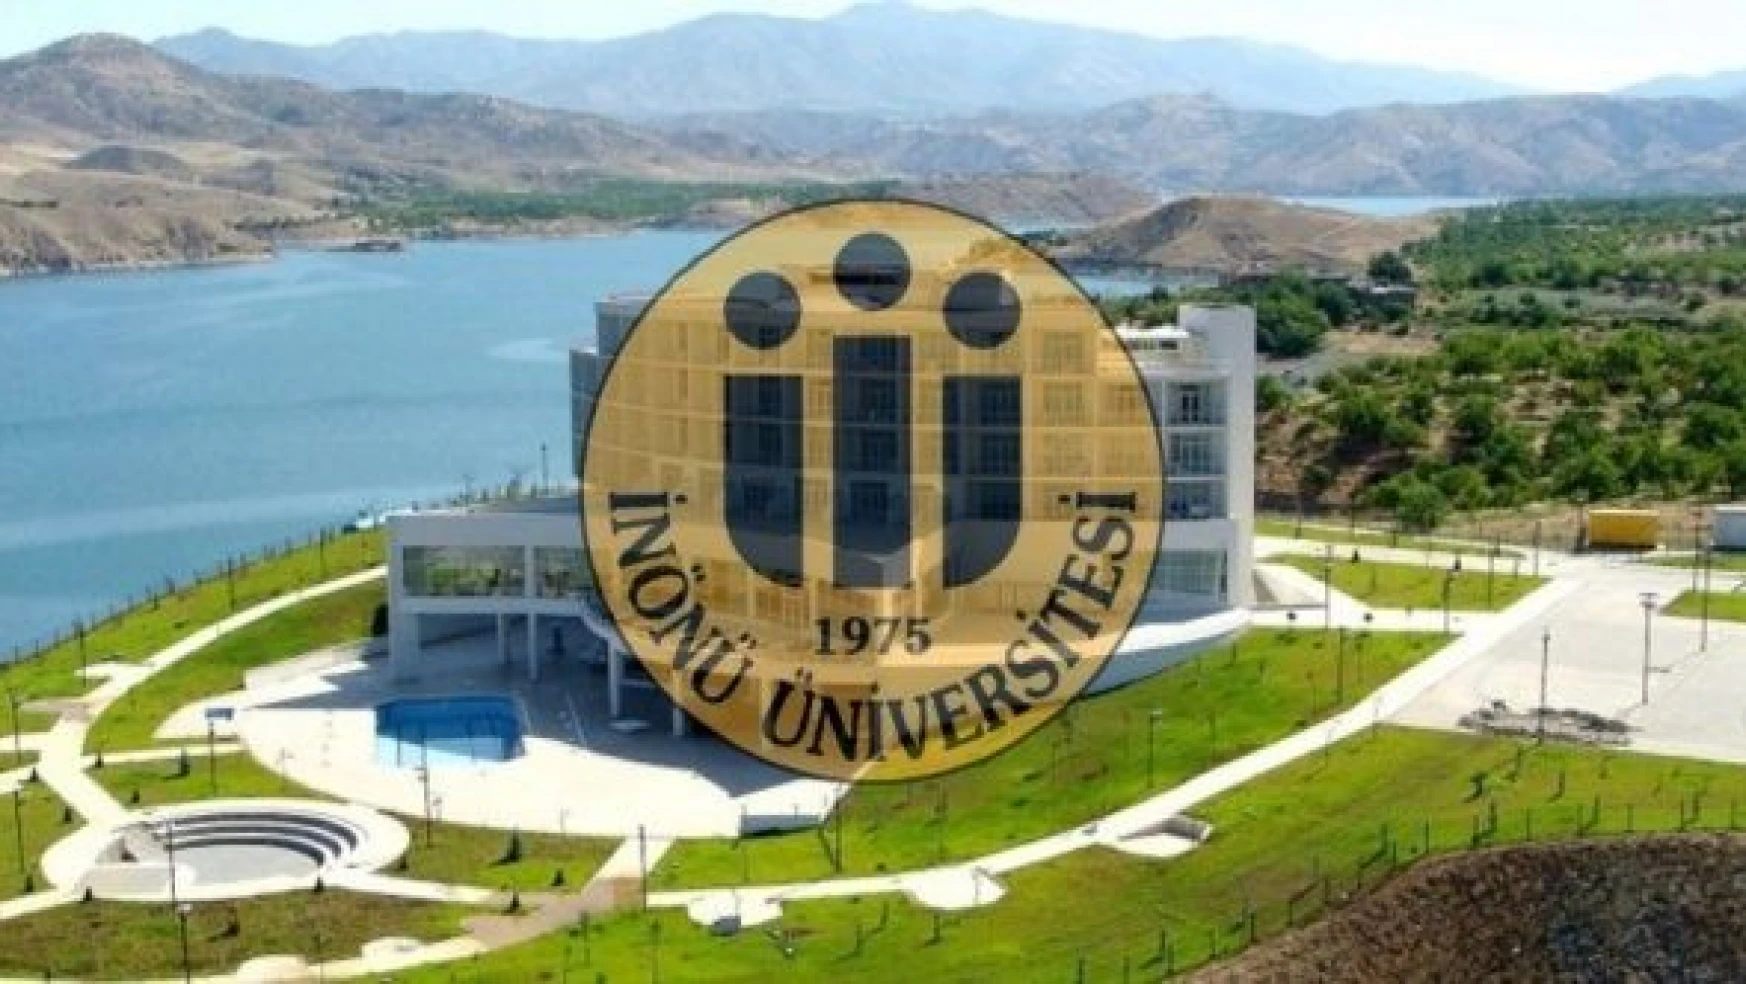 İnönü Üniversitesi pedogojik formasyon öğrencilerinden üniversiteye tepki